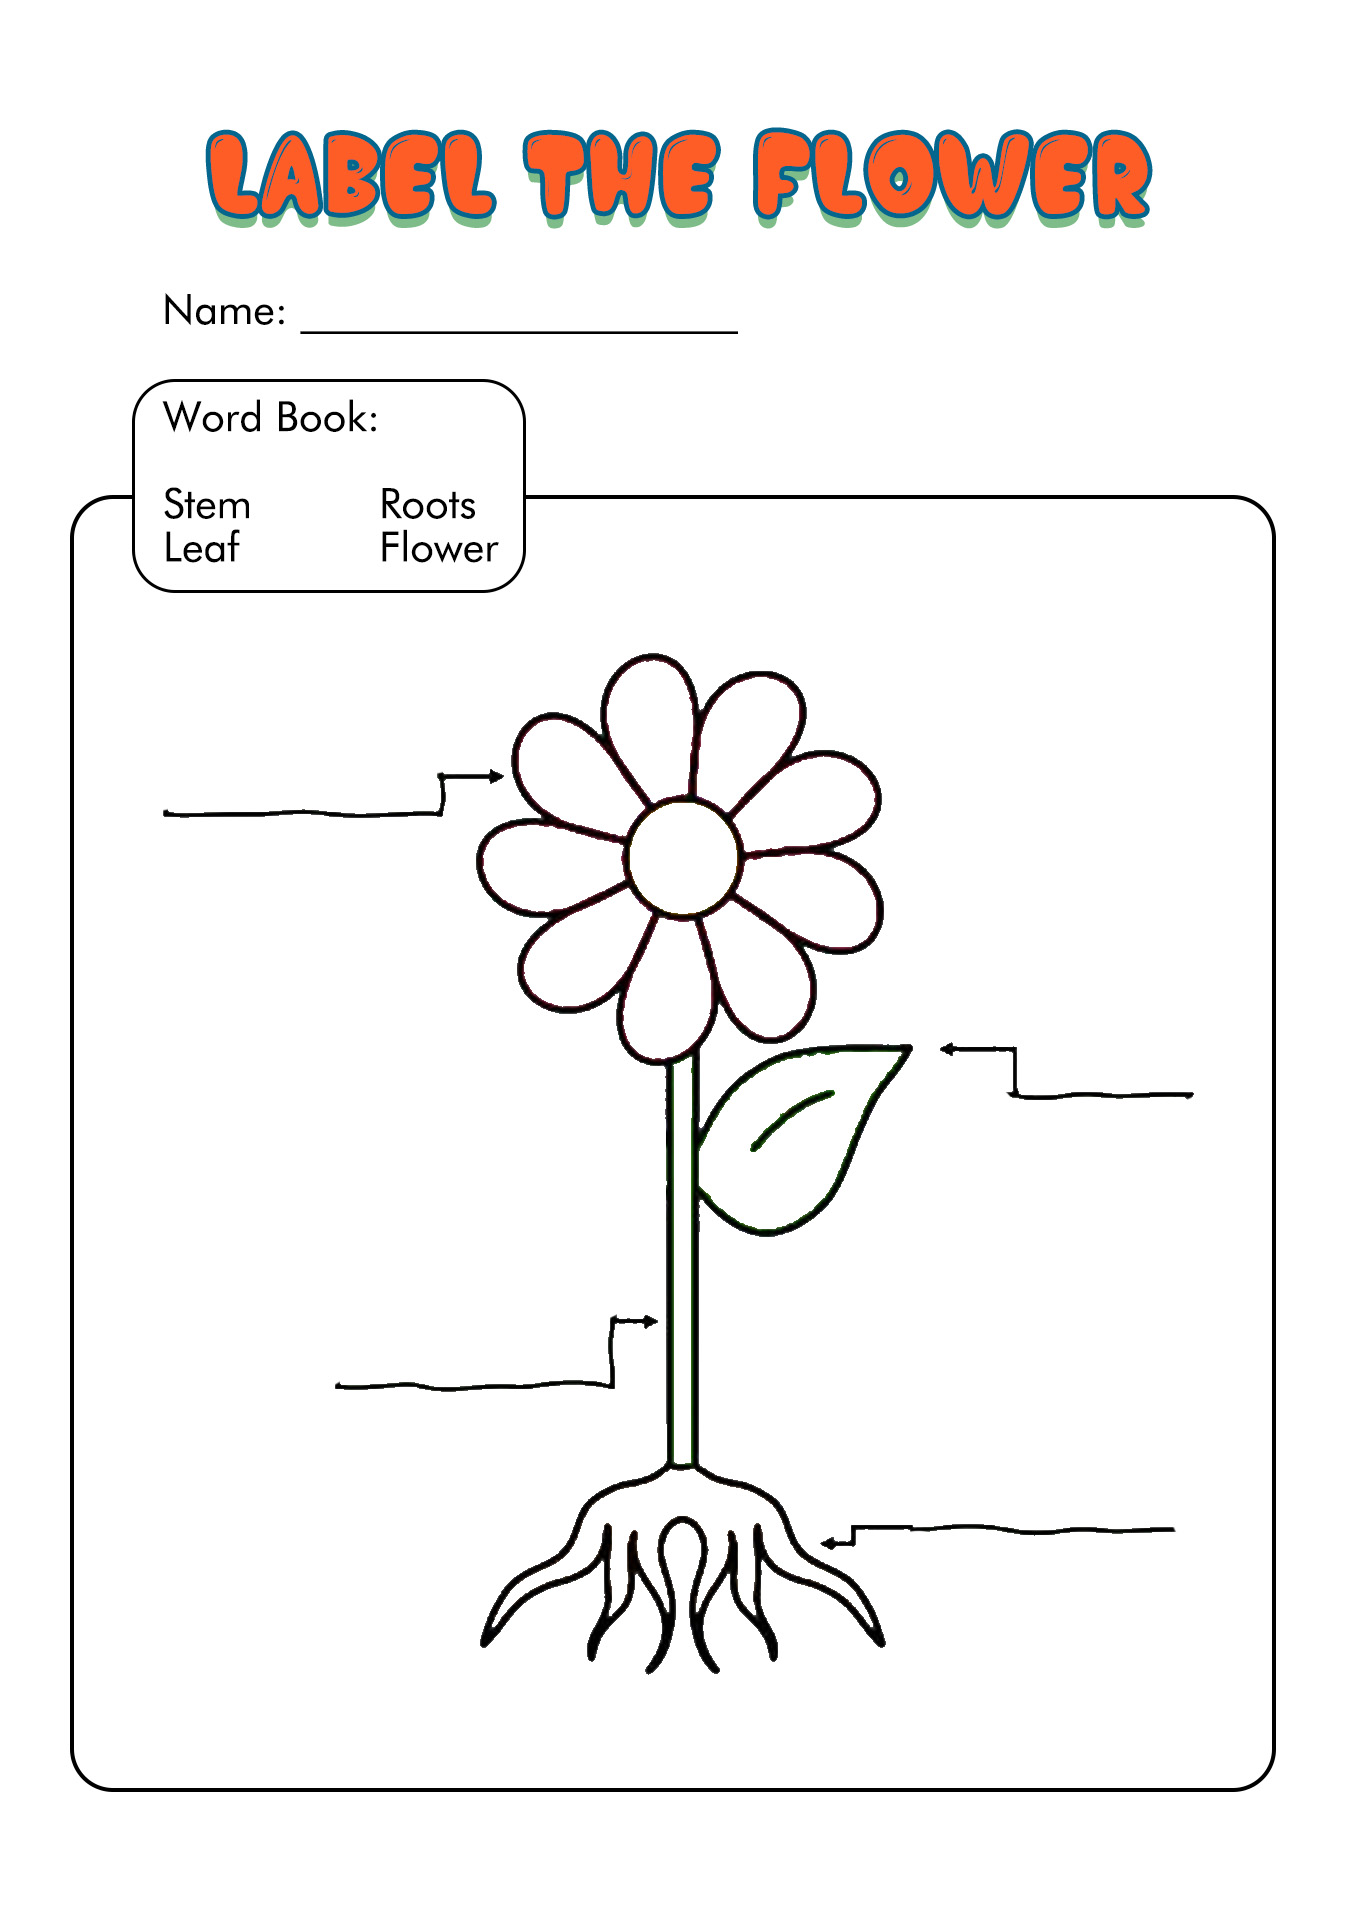 14 Plant Worksheets For Grade 1 Free PDF at worksheeto com